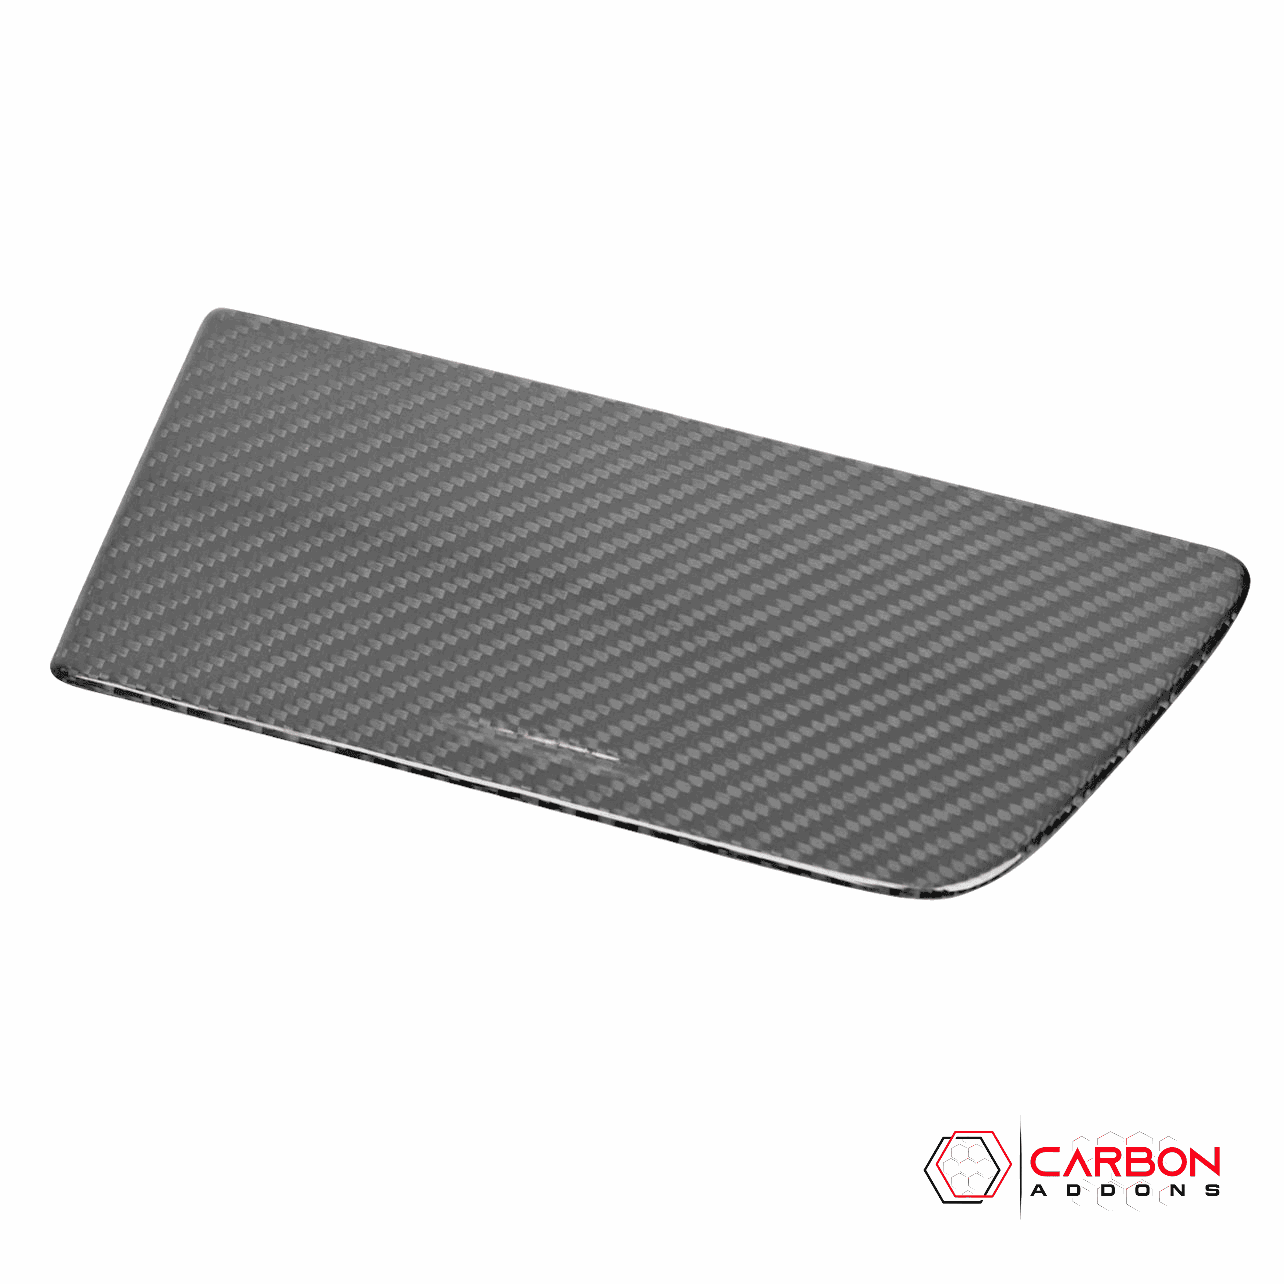 C7 Corvette 2014-2019 Carbon Fiber Center Console Storage Compartment Cover - carbonaddons Carbon Fiber Parts, Accessories, Upgrades, Mods